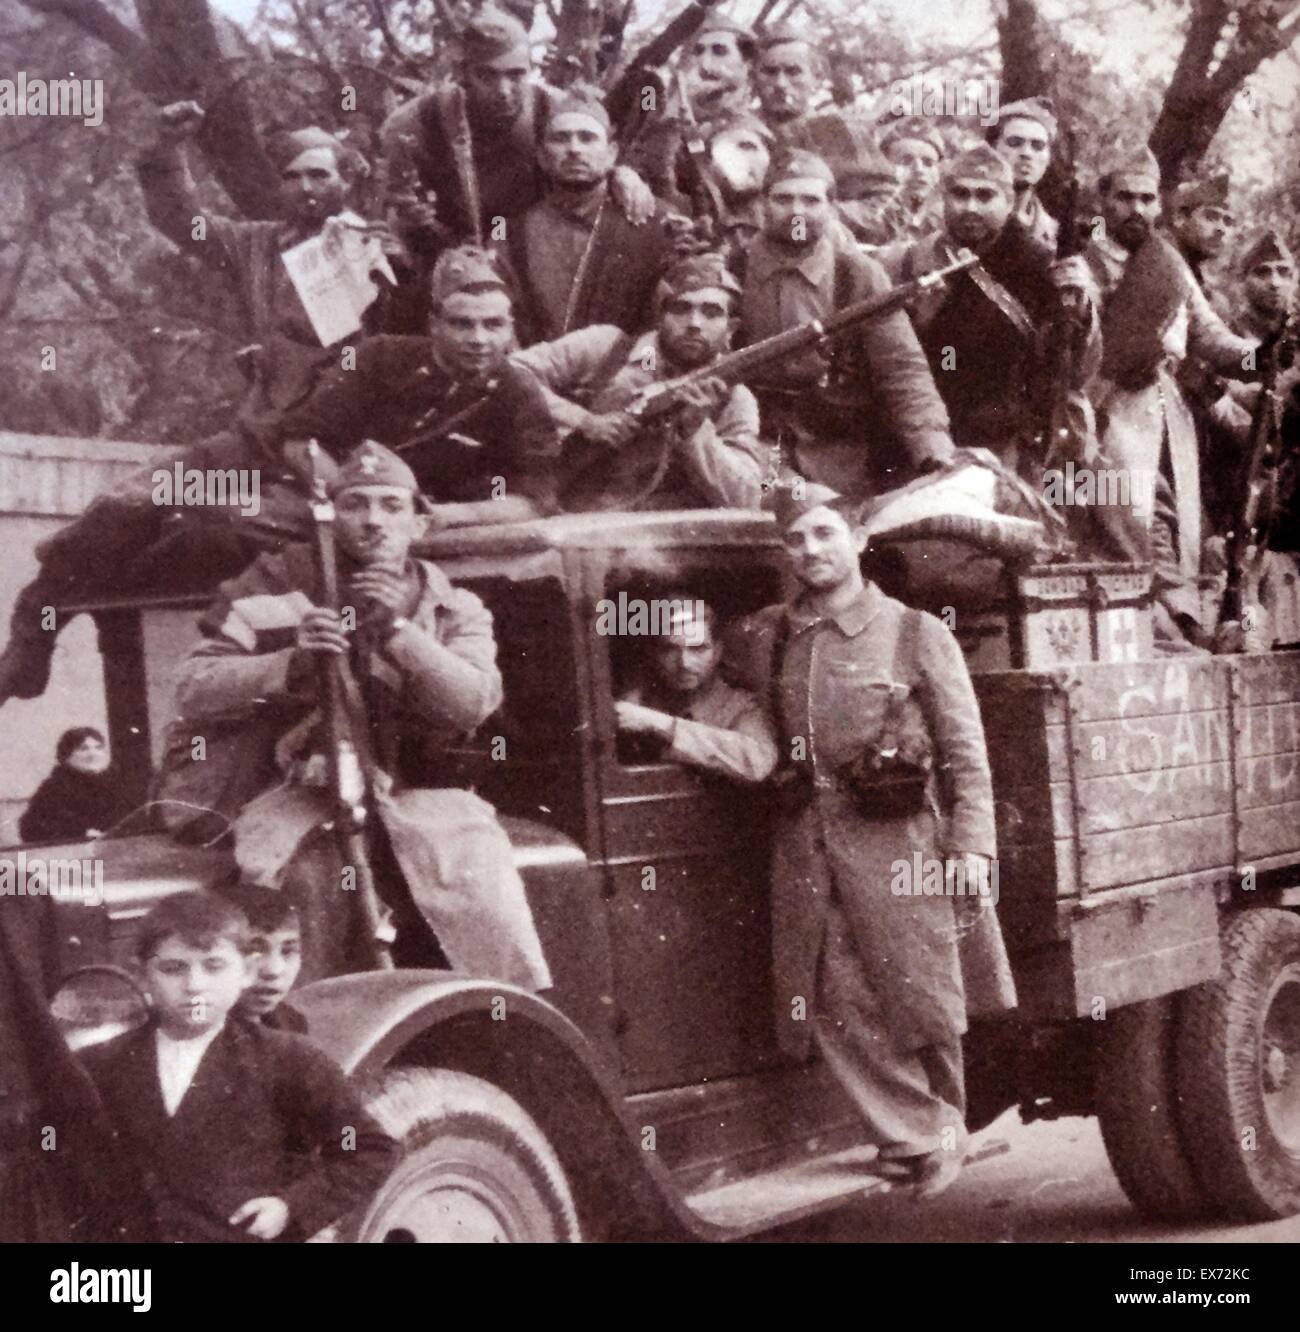 LKW voller Soldaten loyal zur republikanischen Regierung während des spanischen Bürgerkriegs Stockfoto